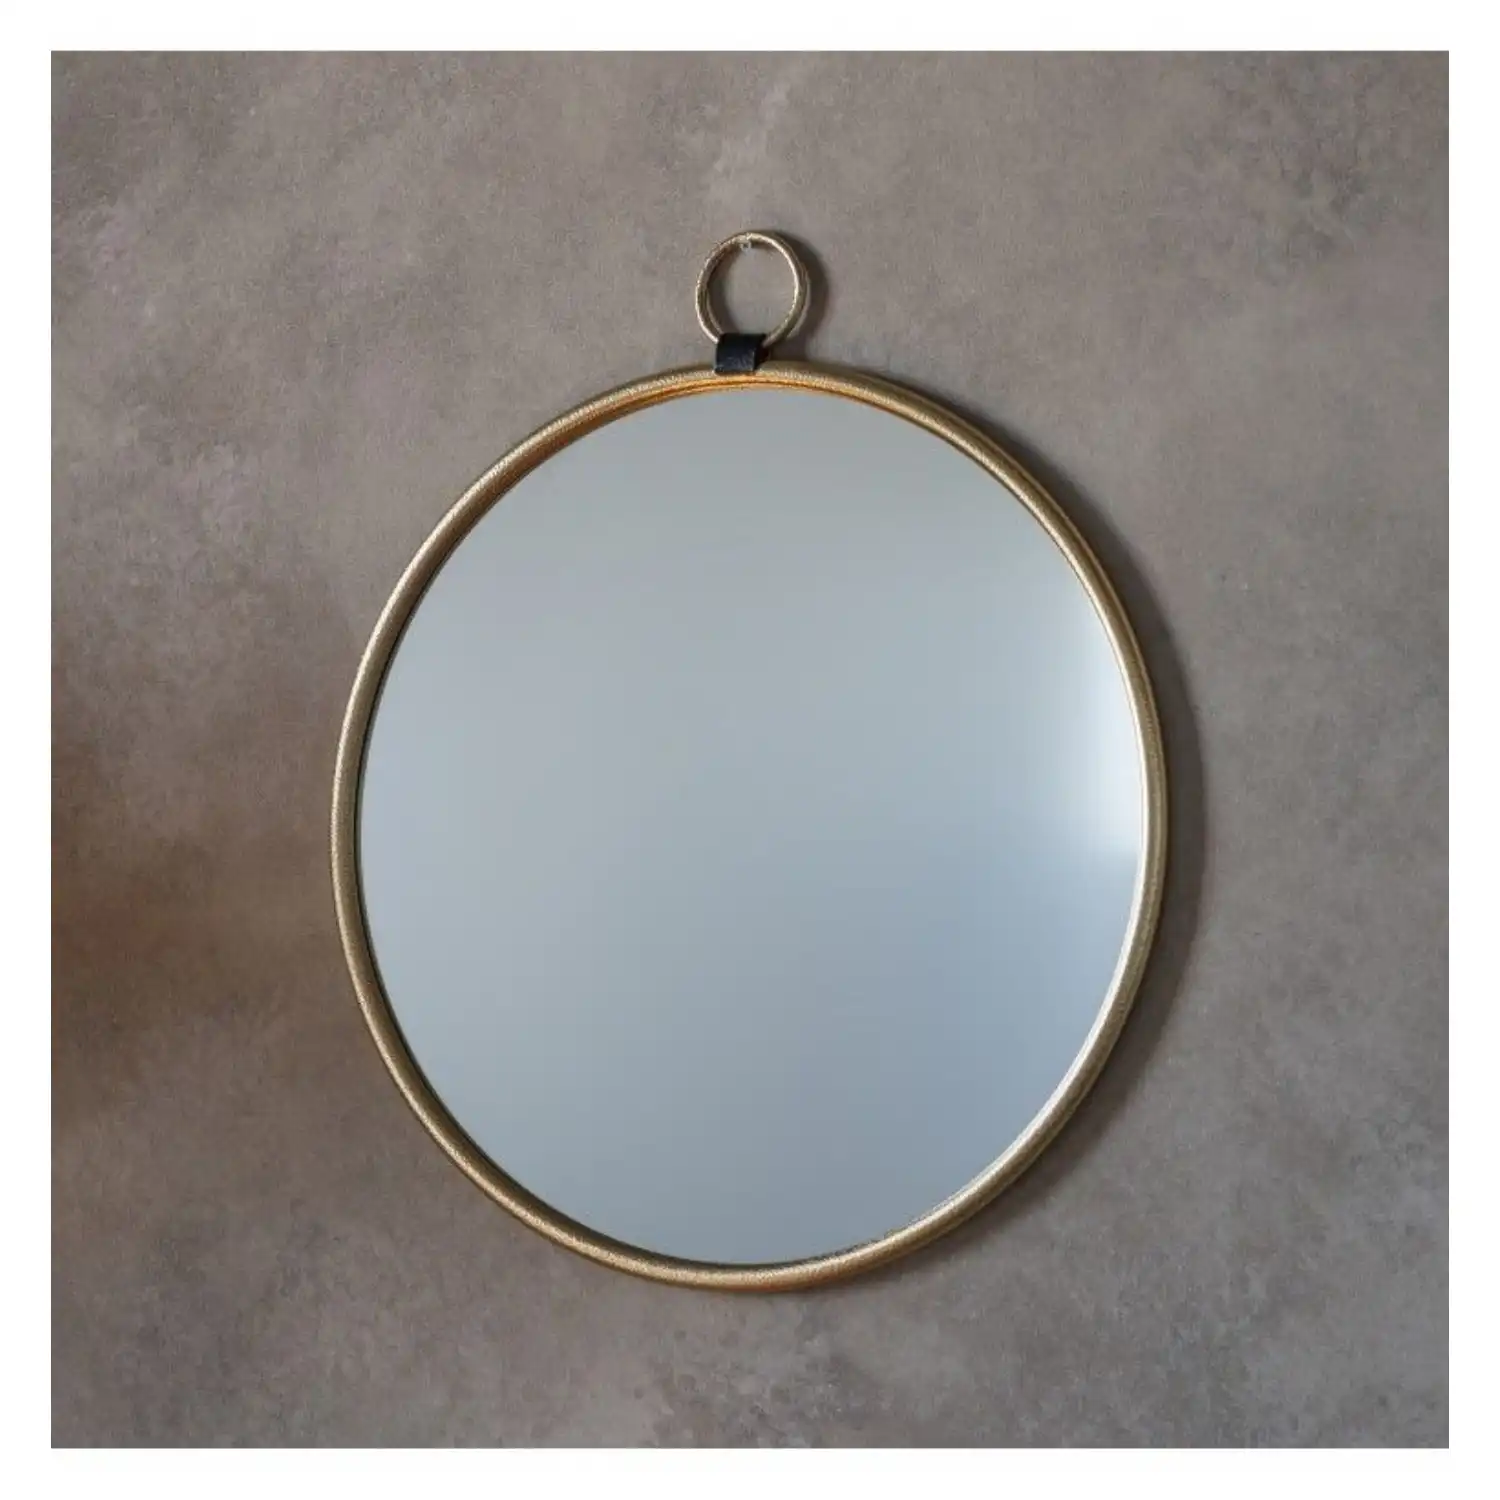 Bayswater Gold Round Wall Mirror 60cm Diameter